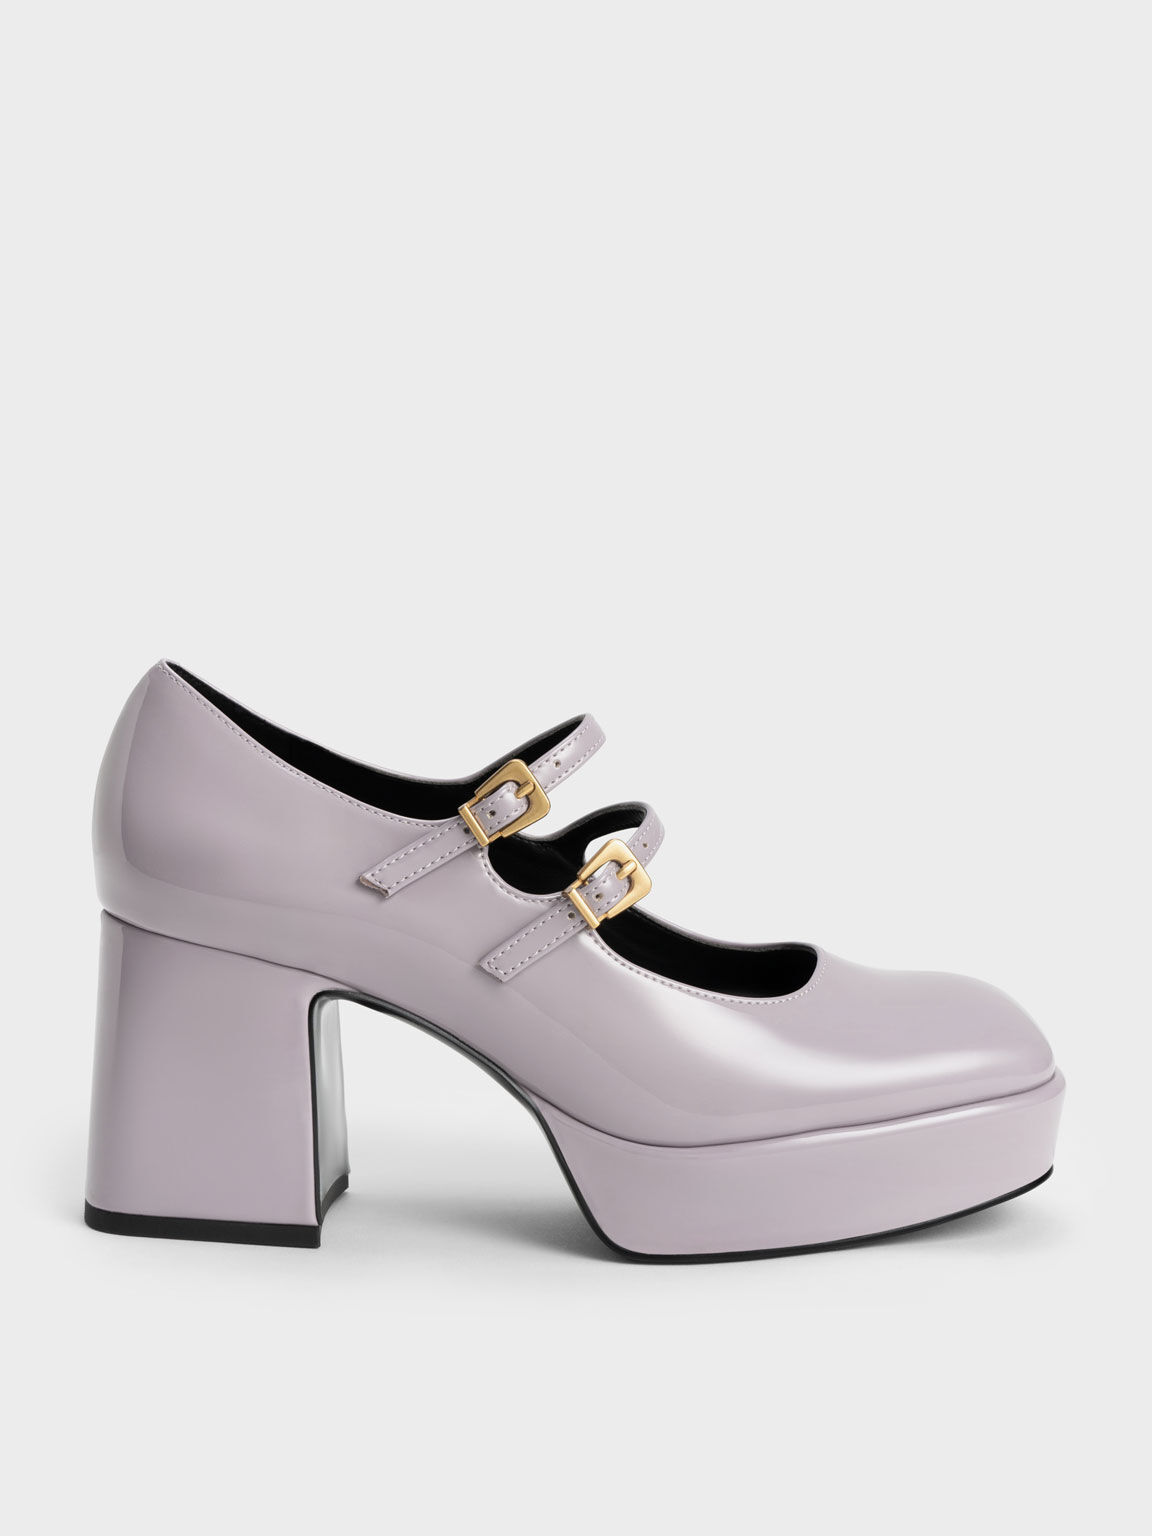 雙帶厚底瑪莉珍鞋, 淺紫灰, hi-res